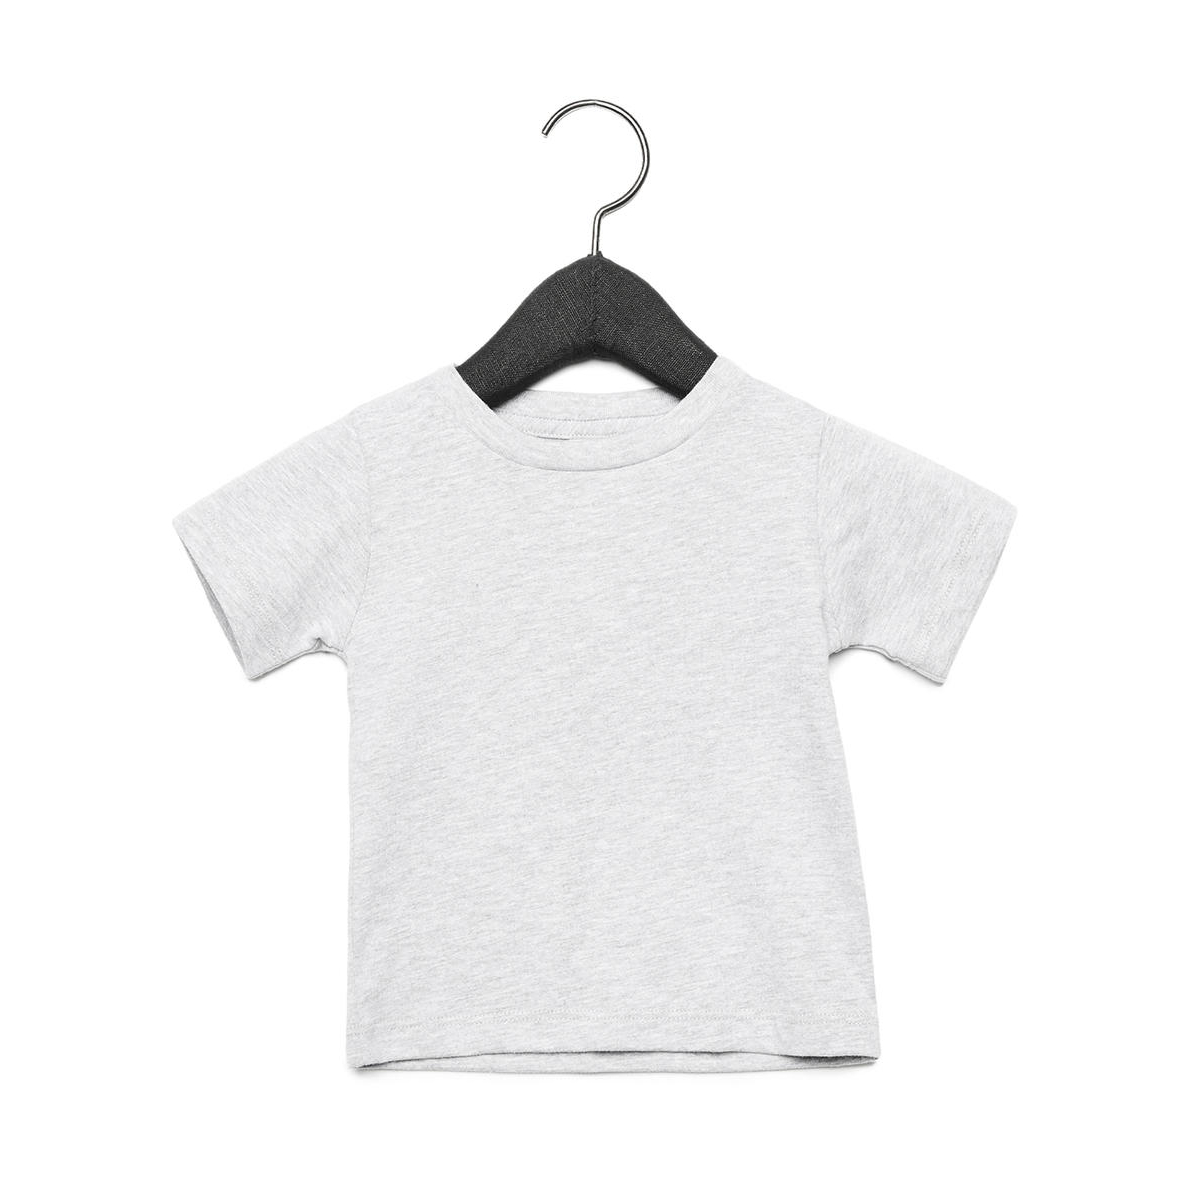 Tričko dětské Baby Jersey B + C s krátkým rukávem - světle šedé, 18-24 měsíců